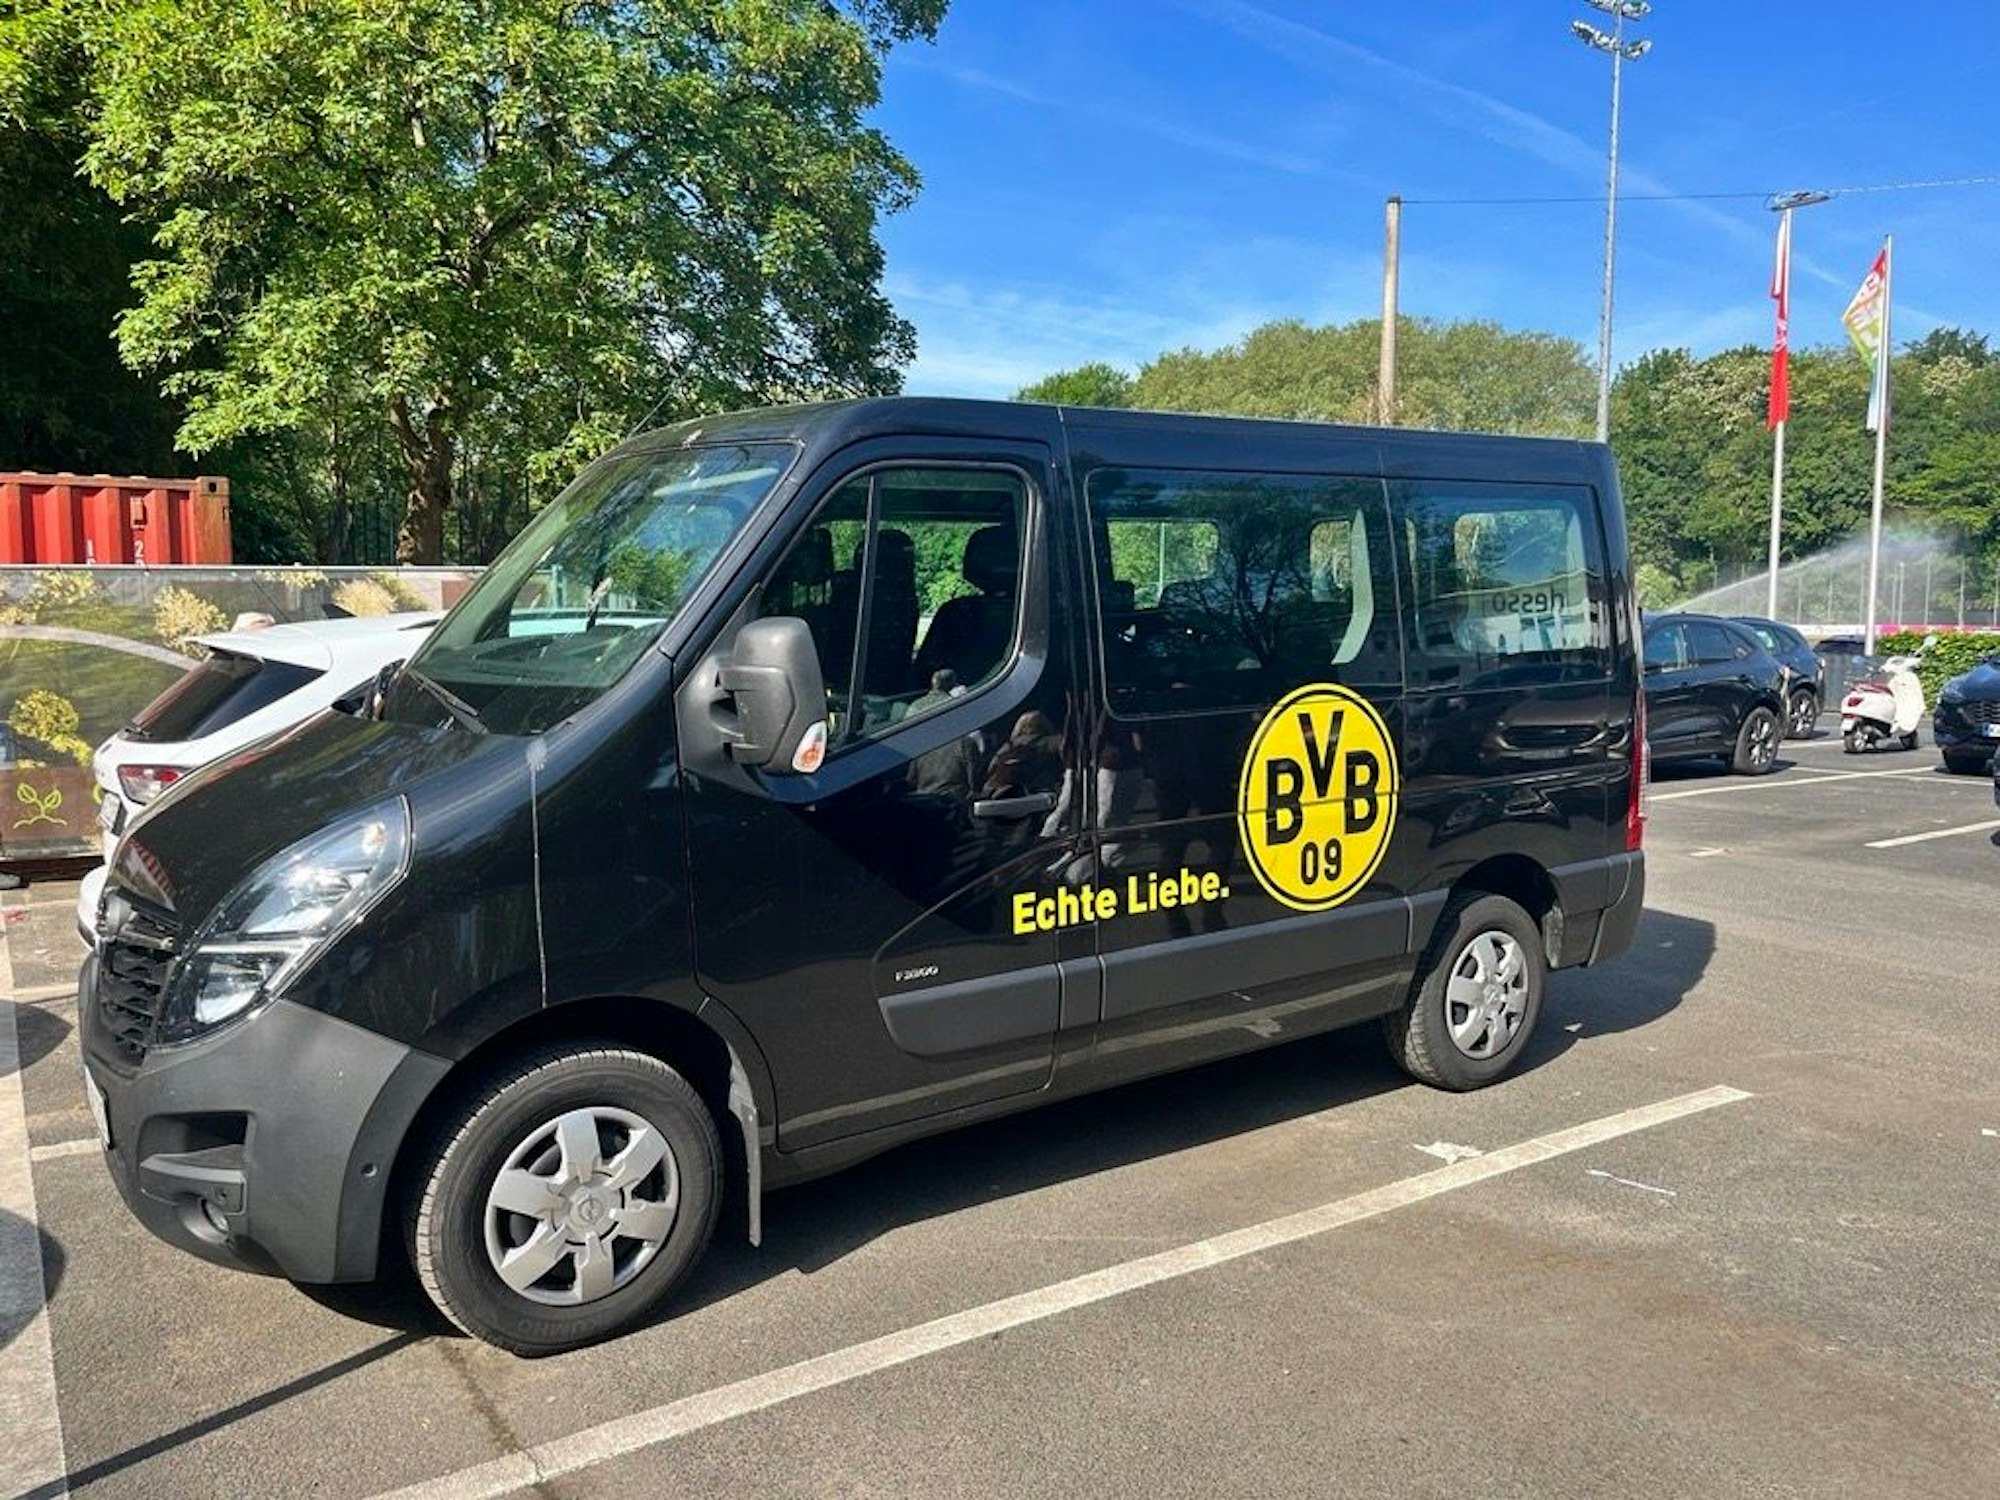 Ein Bus von Borussia Dortmund steht in Köln am Geißbockheim.